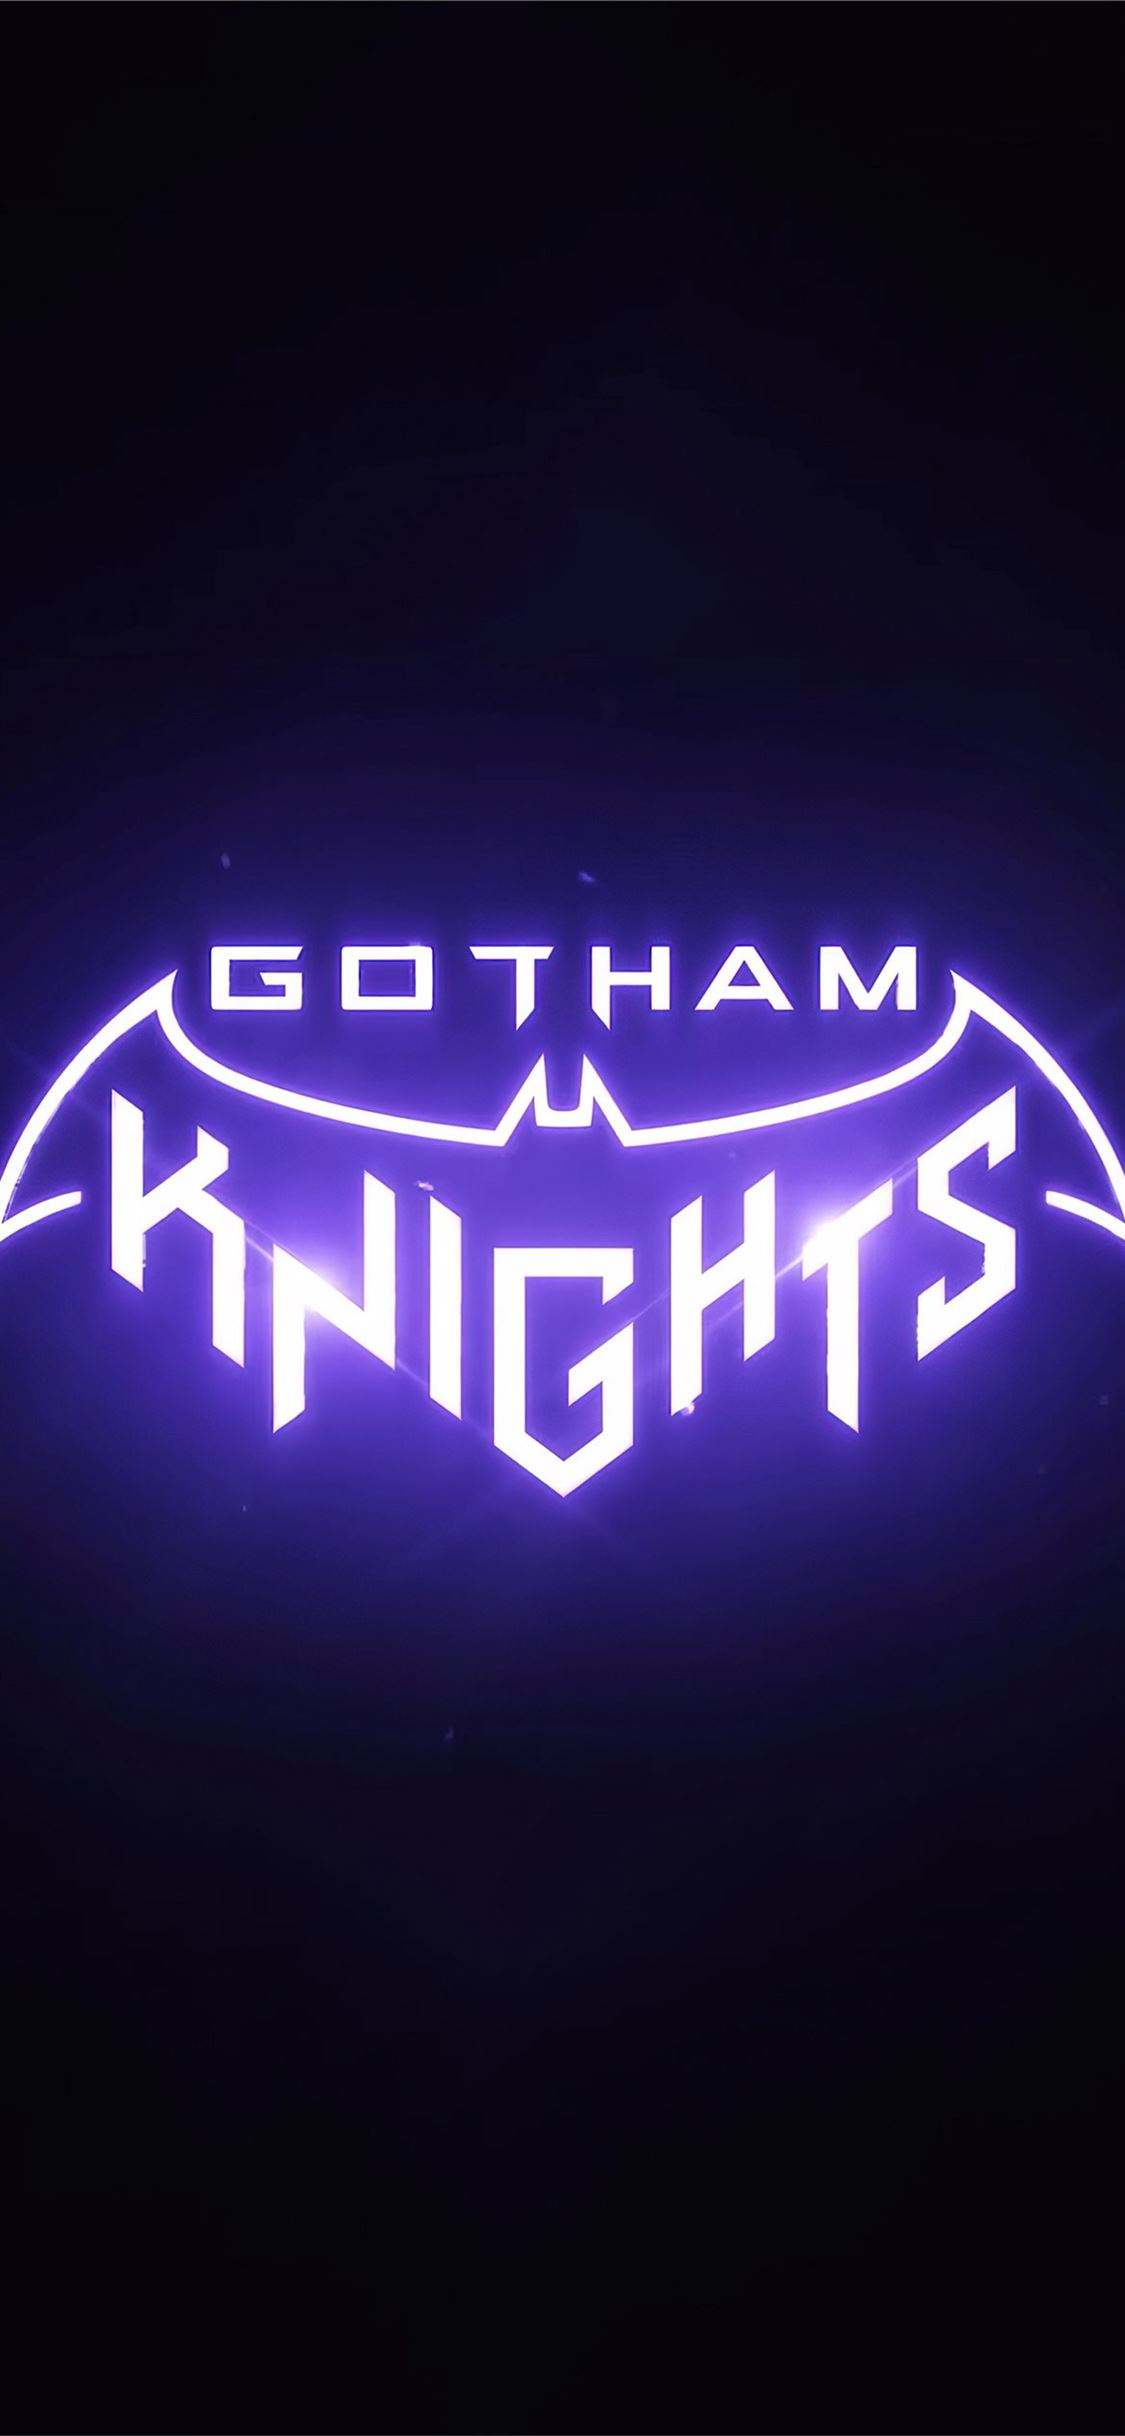 gotham knights steam download free